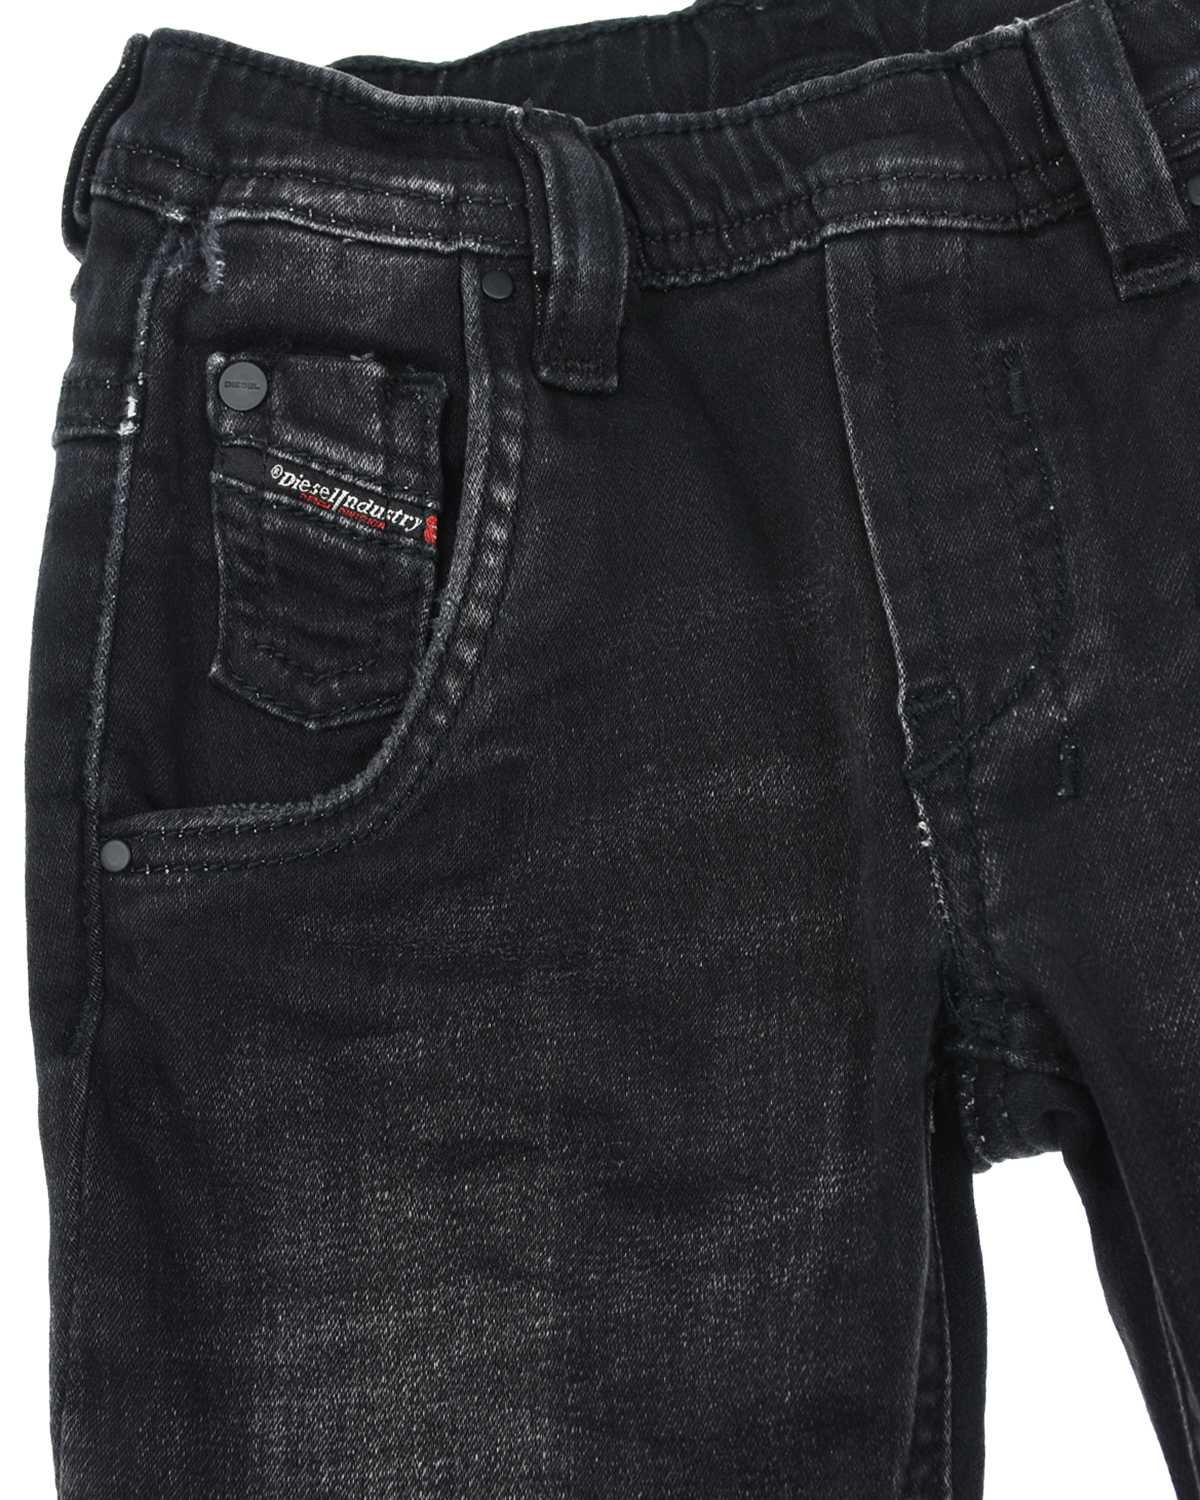 Потертые джинсы с поясом на резинке Diesel детские, размер 86, цвет серый - фото 3